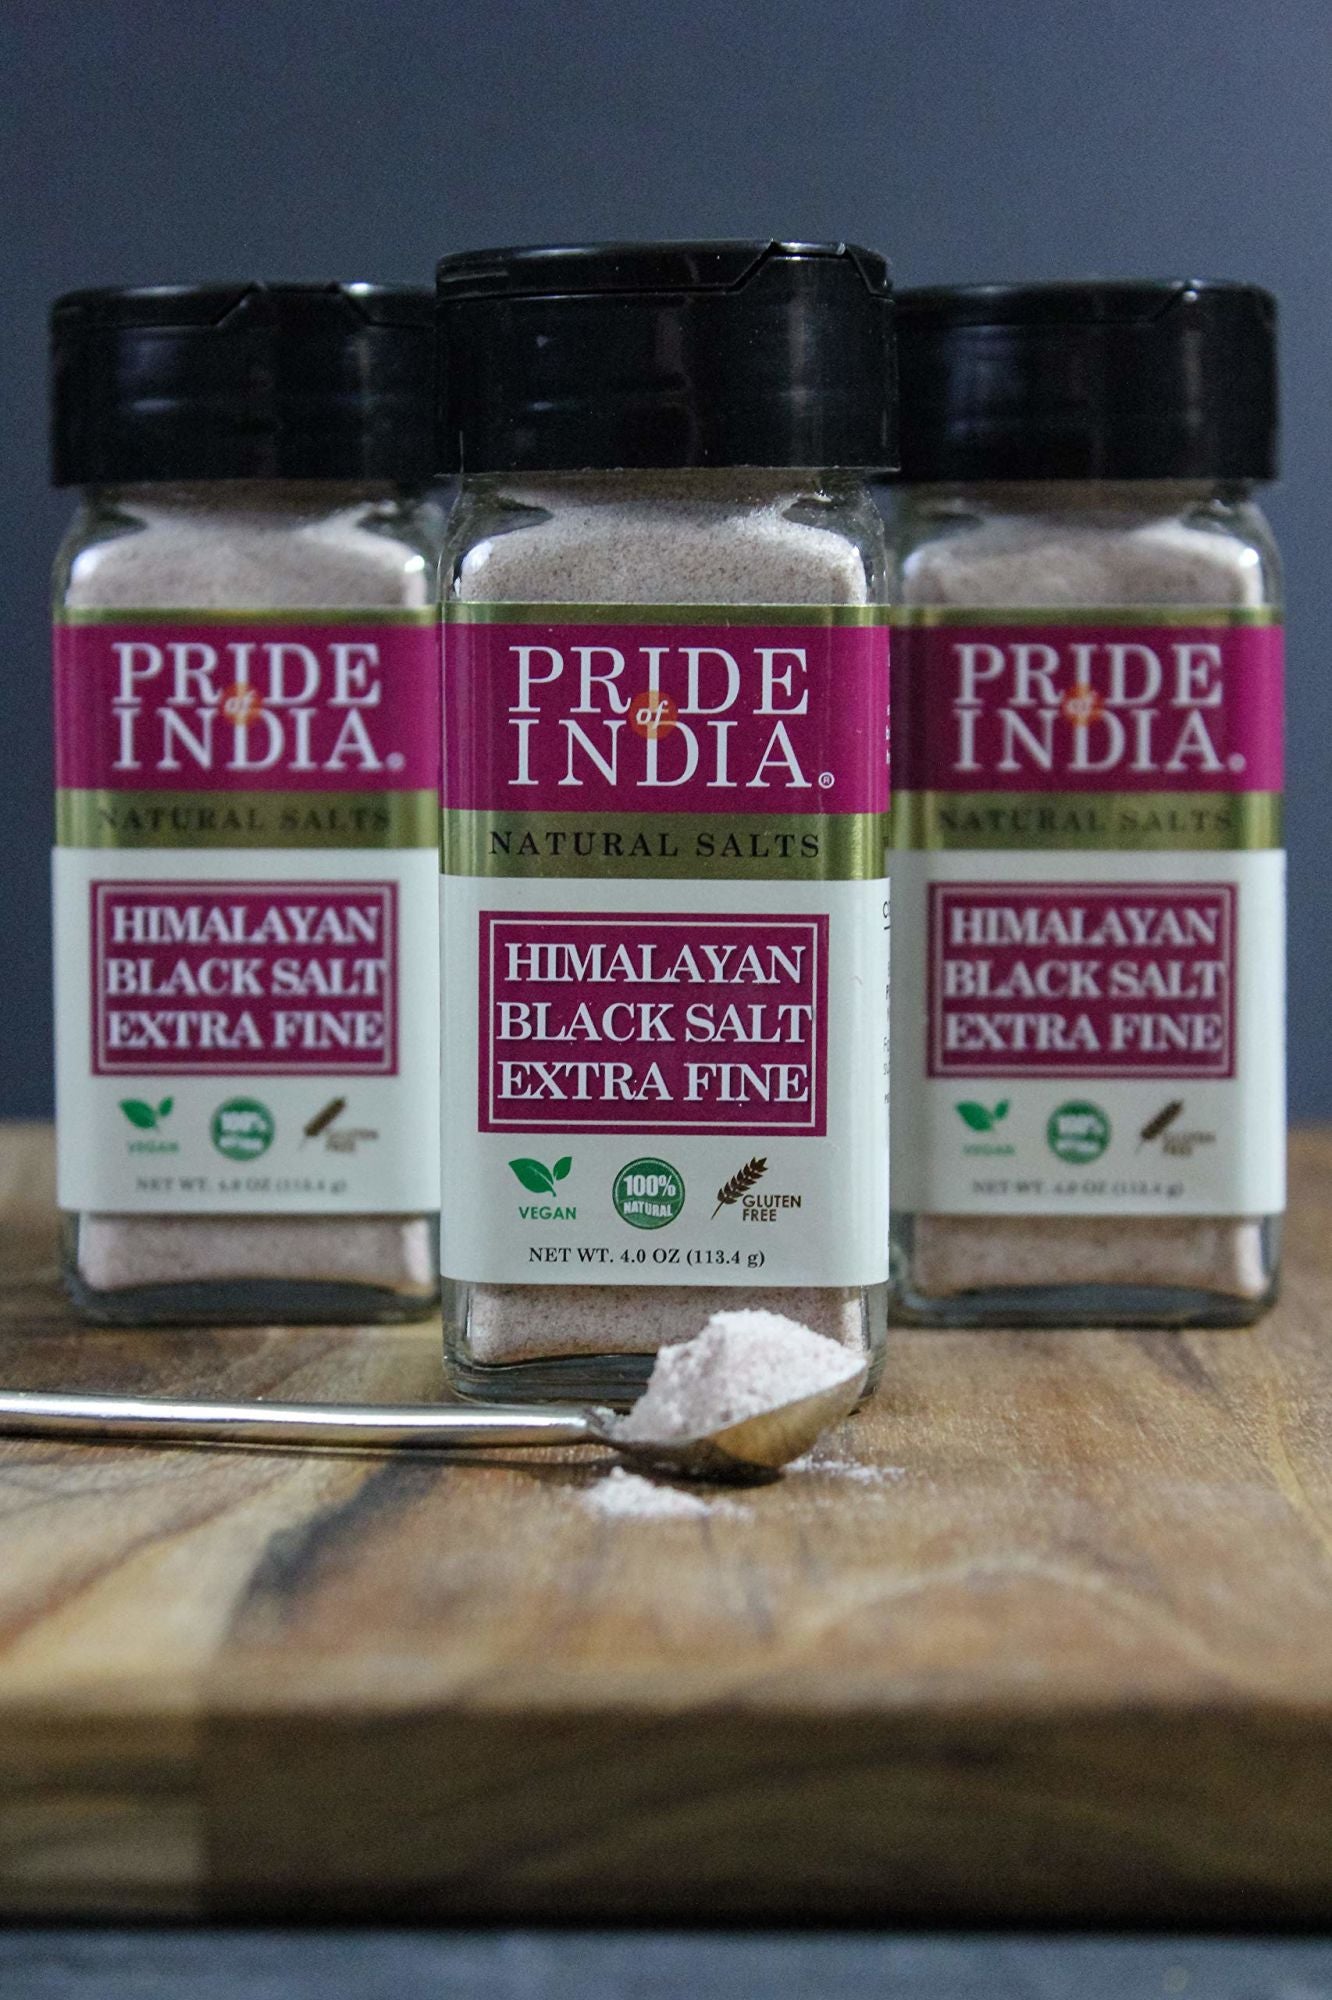 Himalayan Black Rock Salt - Fine Grind, (4.8 oz) - Kala Namak, Contains 84+ Minerals